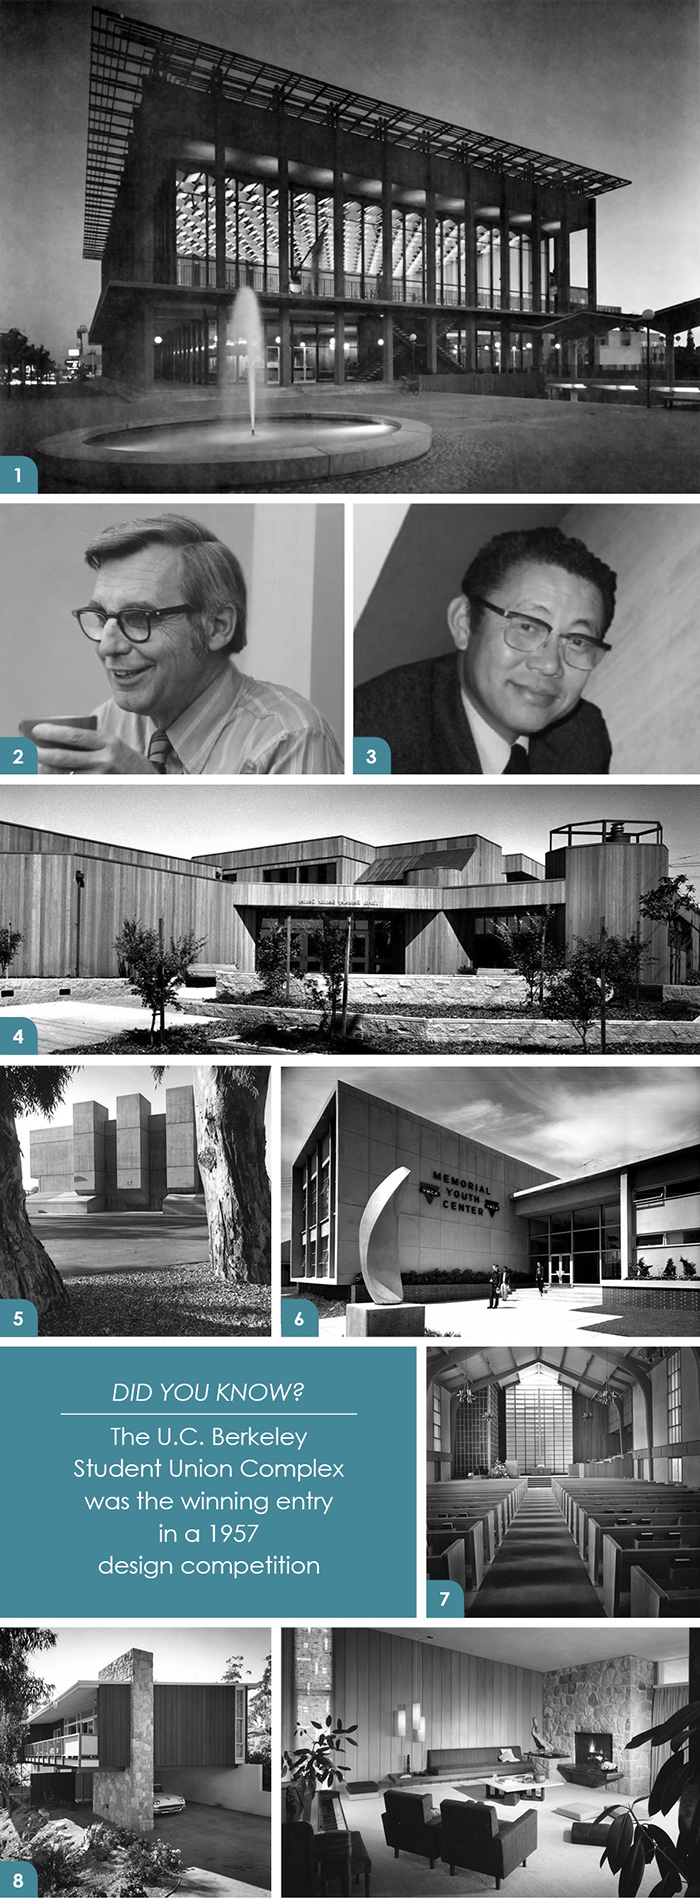 HKIT Architects Celebrates 70 Years!